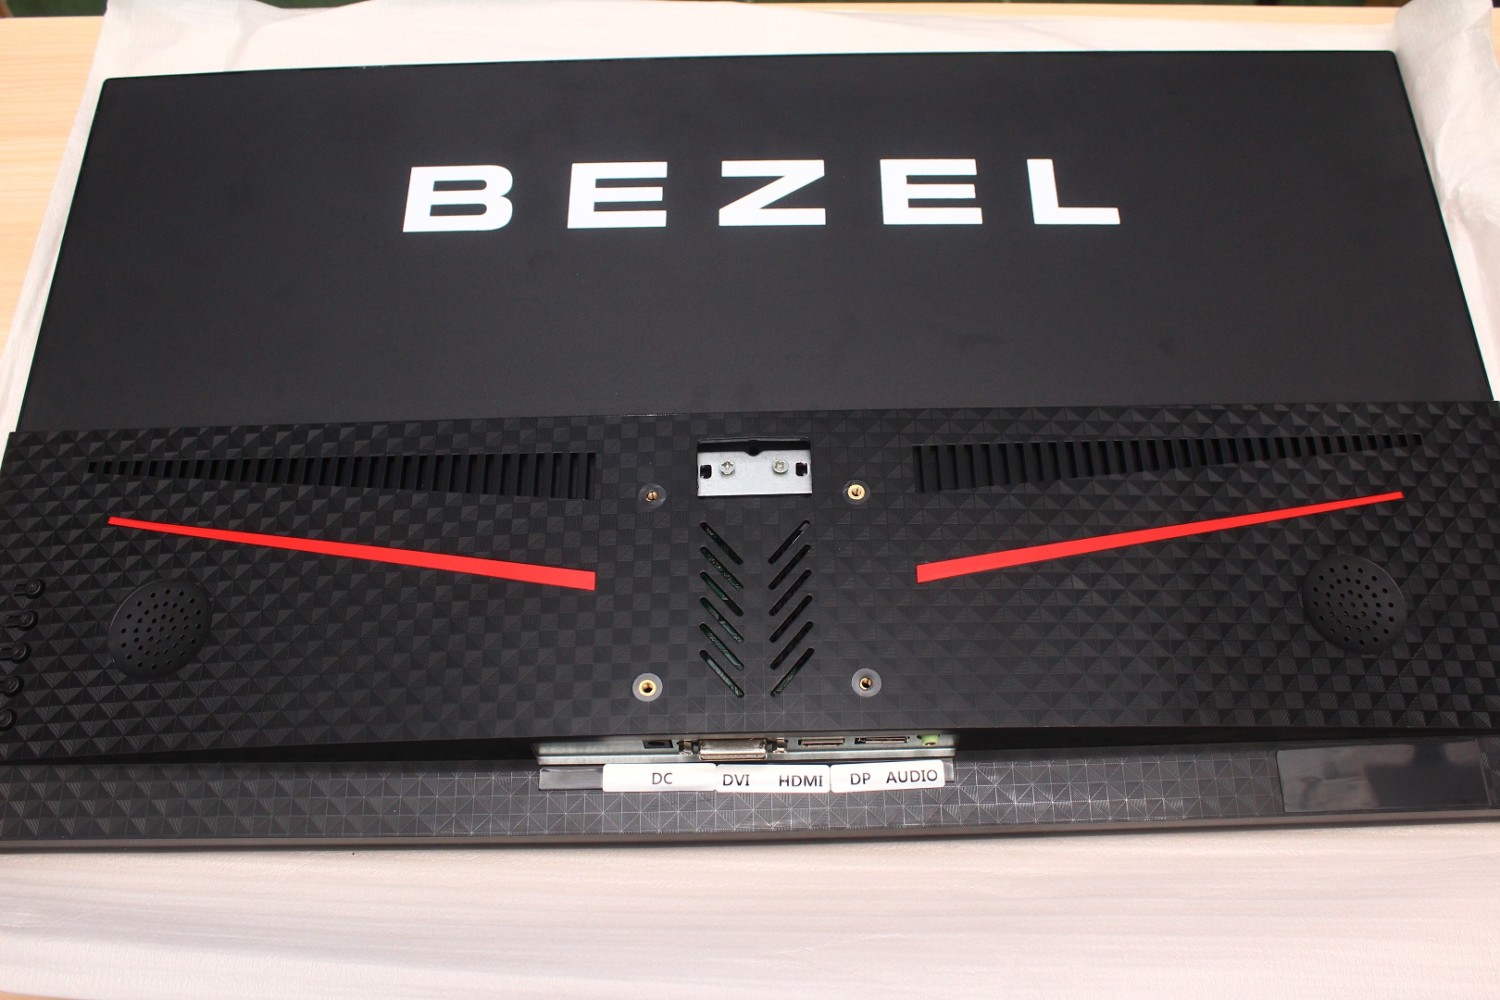 BEZEL 27MD845 unboxing foam inside monitor